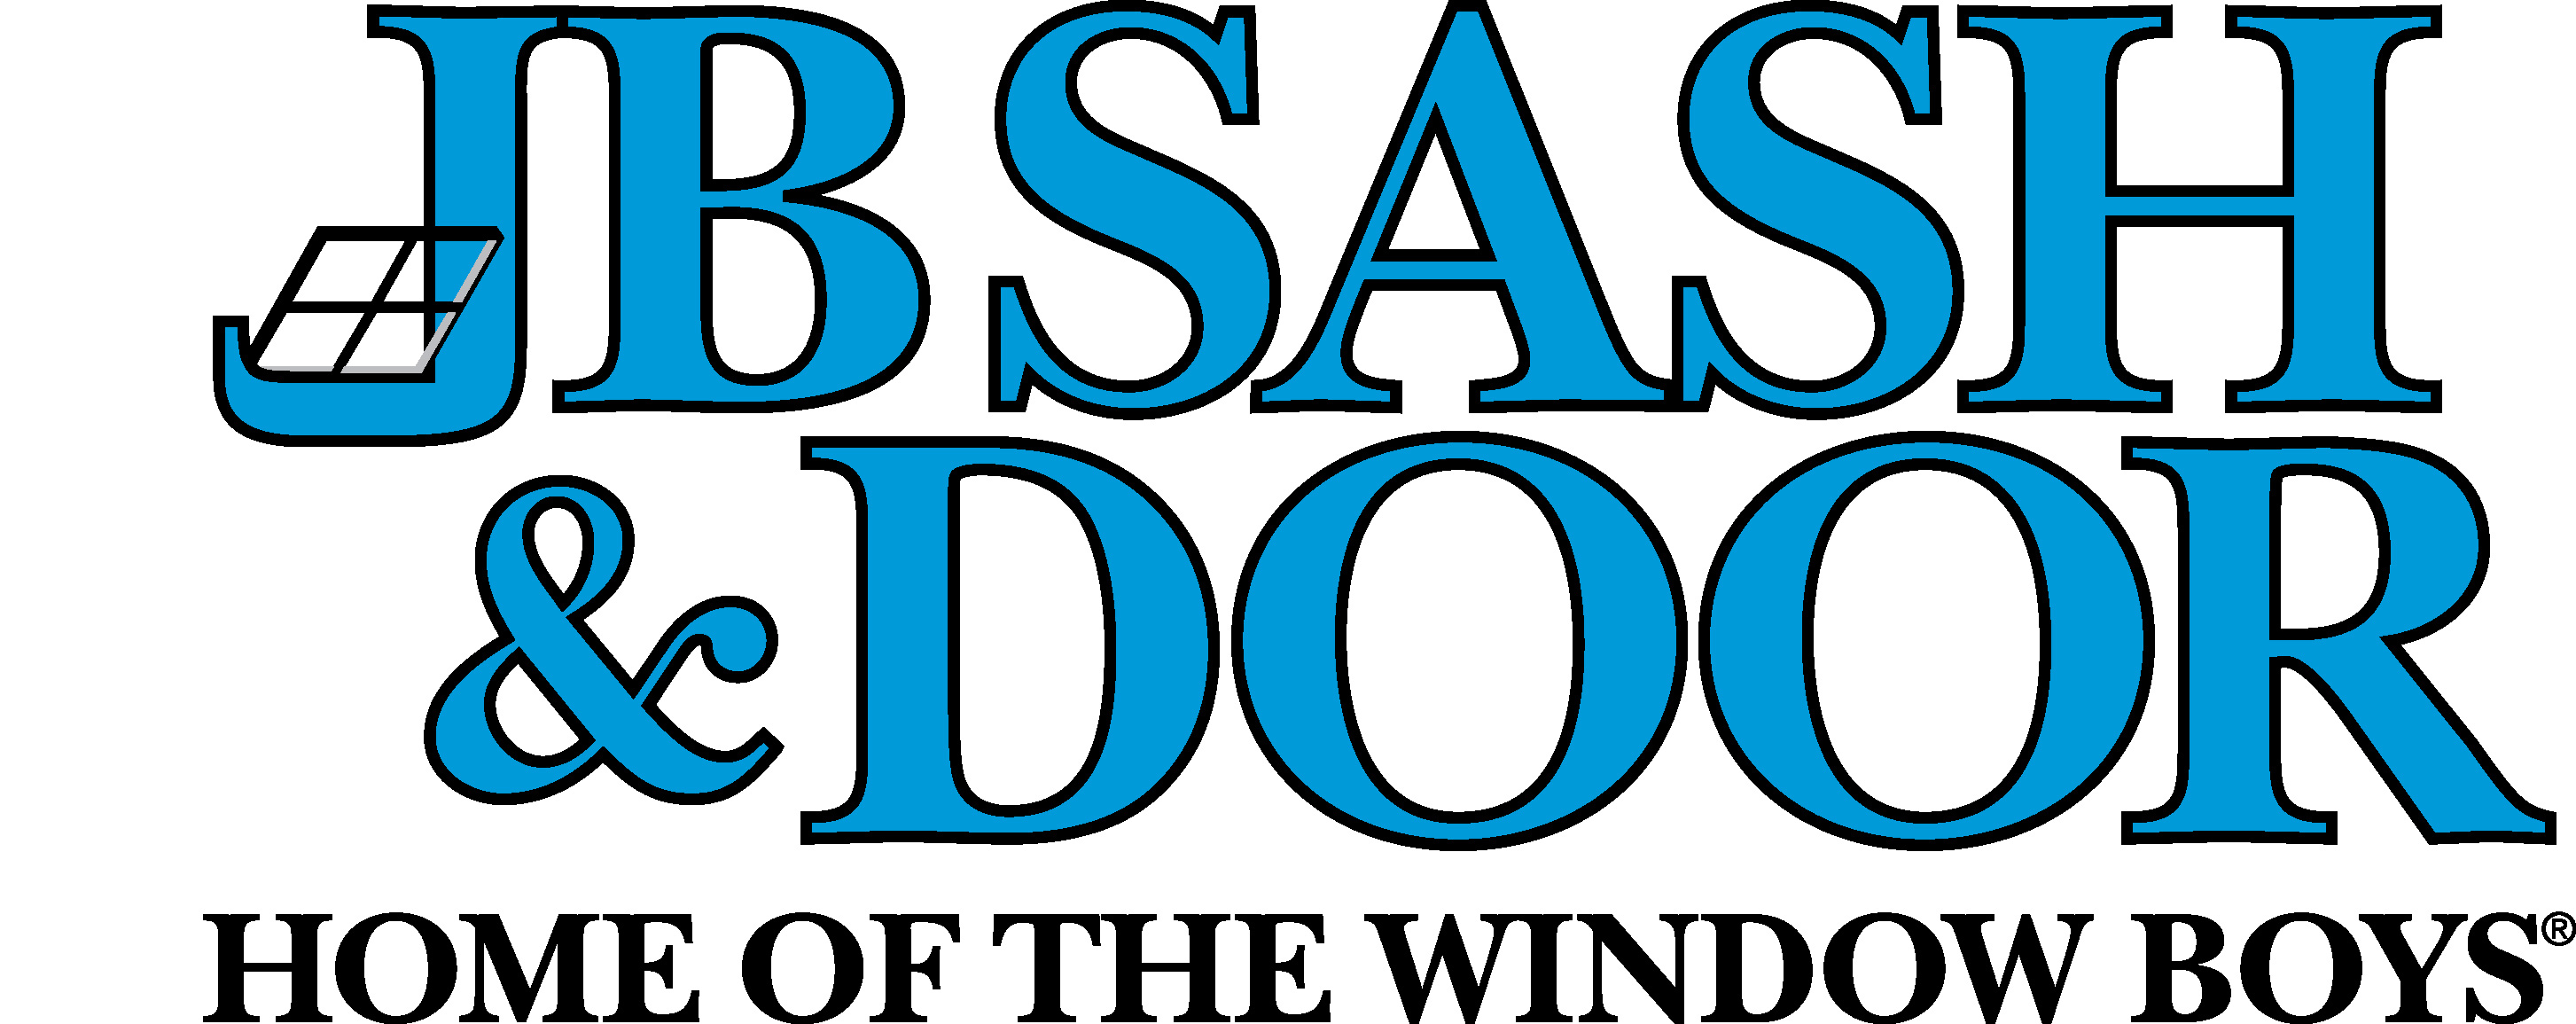 JB Sash & Door logo